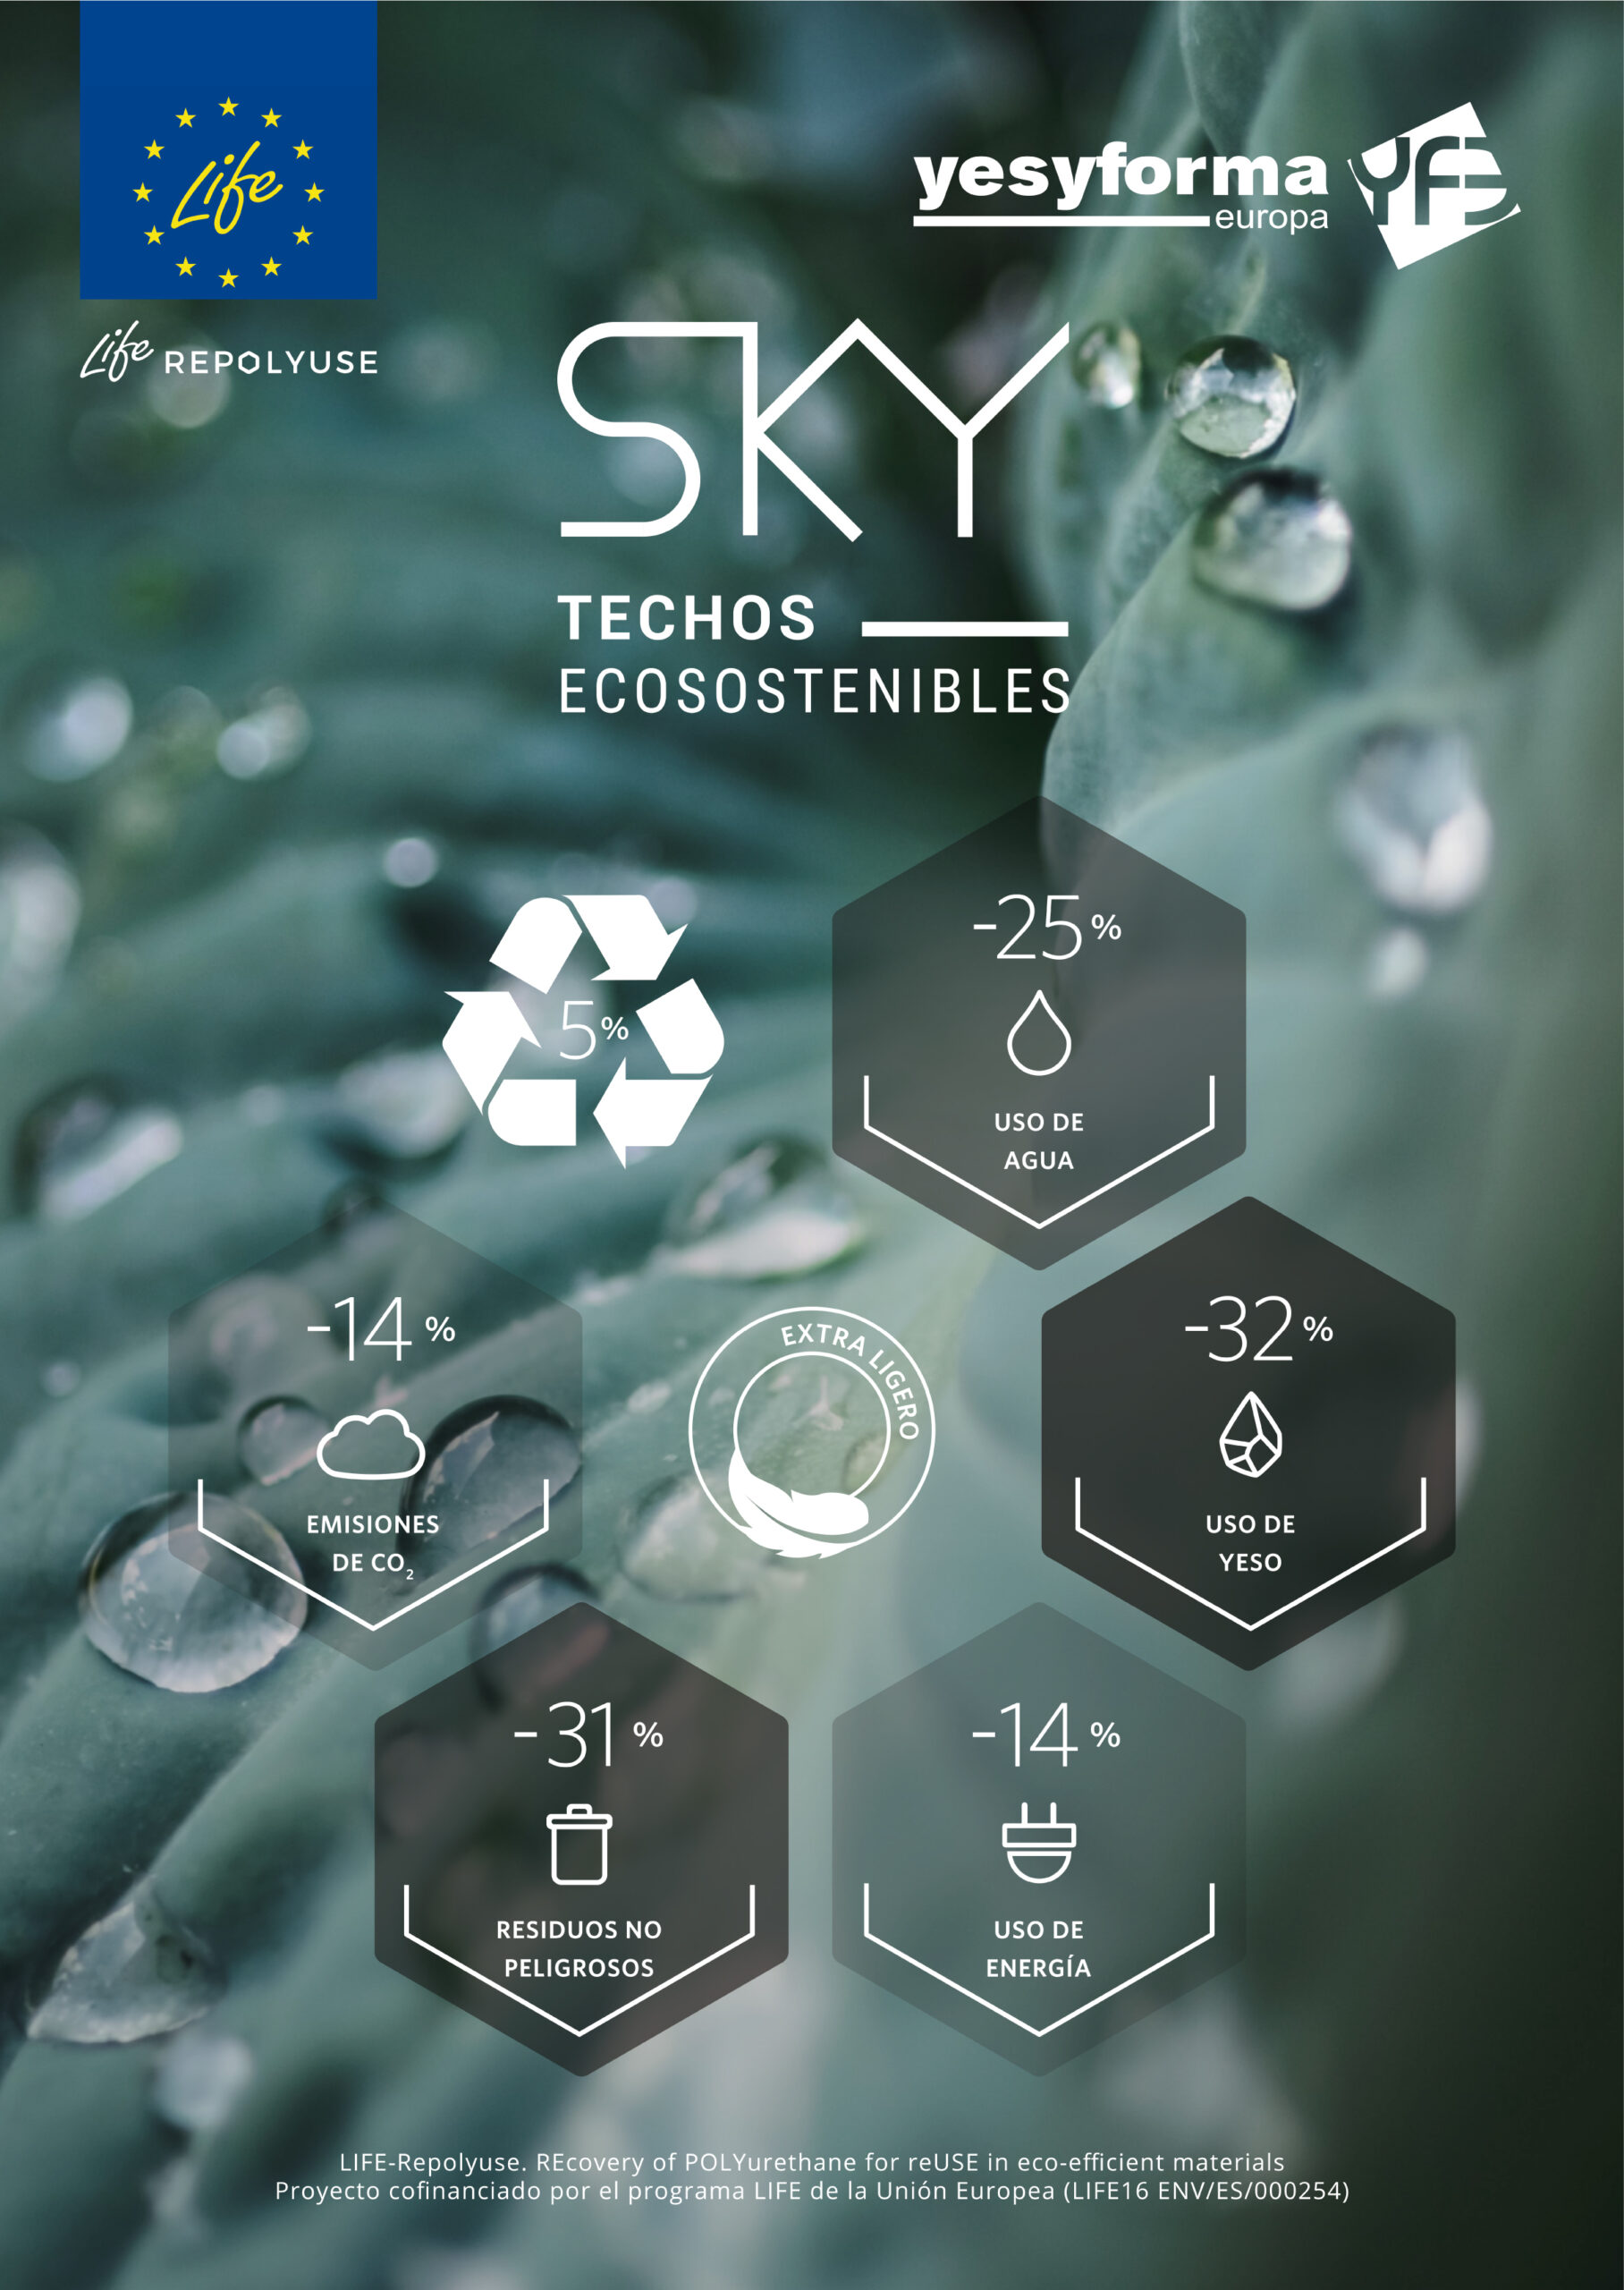 yesyforma sky techos ecosostenibles